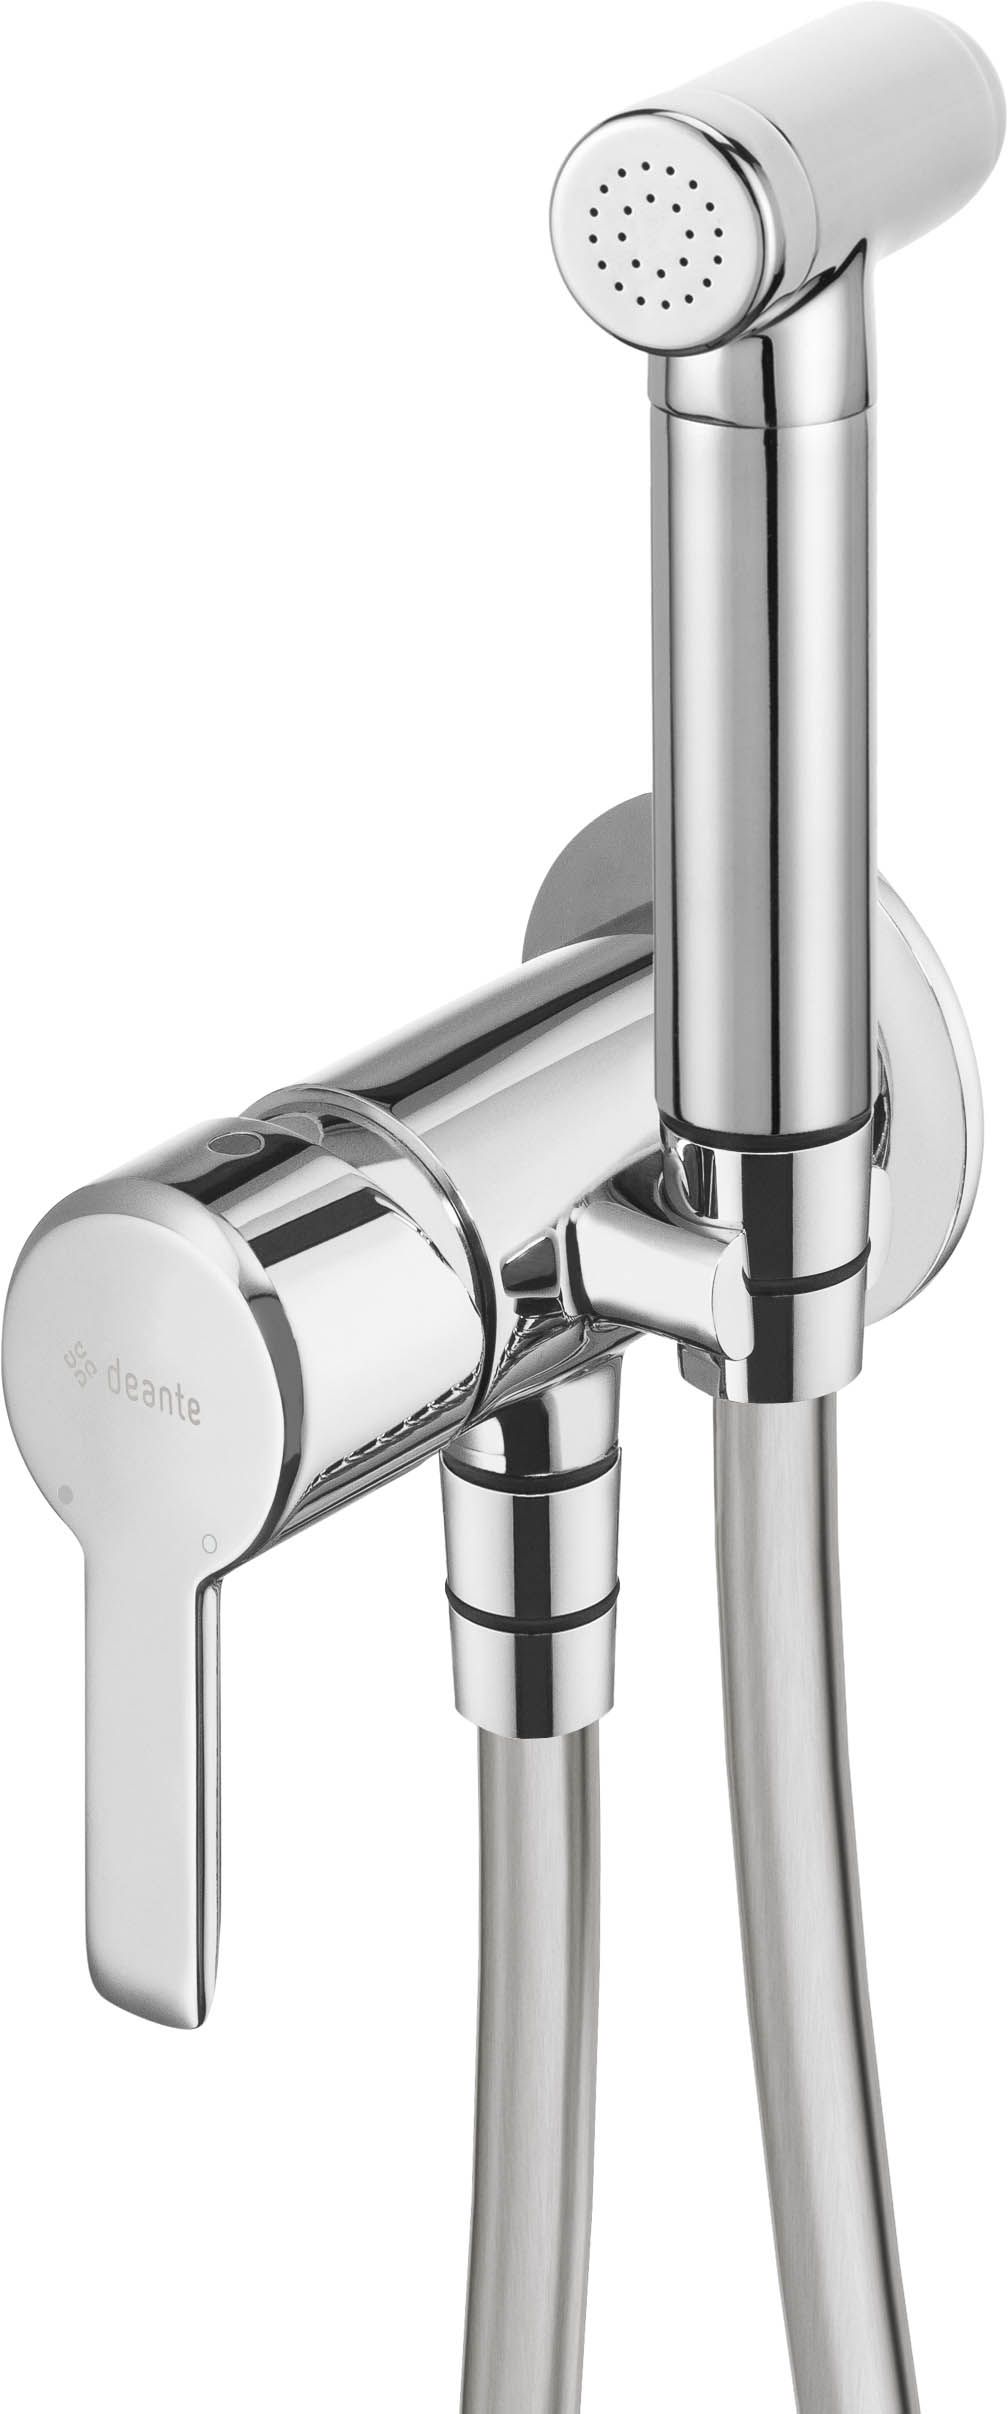 Bidet tap, concealed, with bidetta hand shower - BQA_034M - Główne zdjęcie produktowe